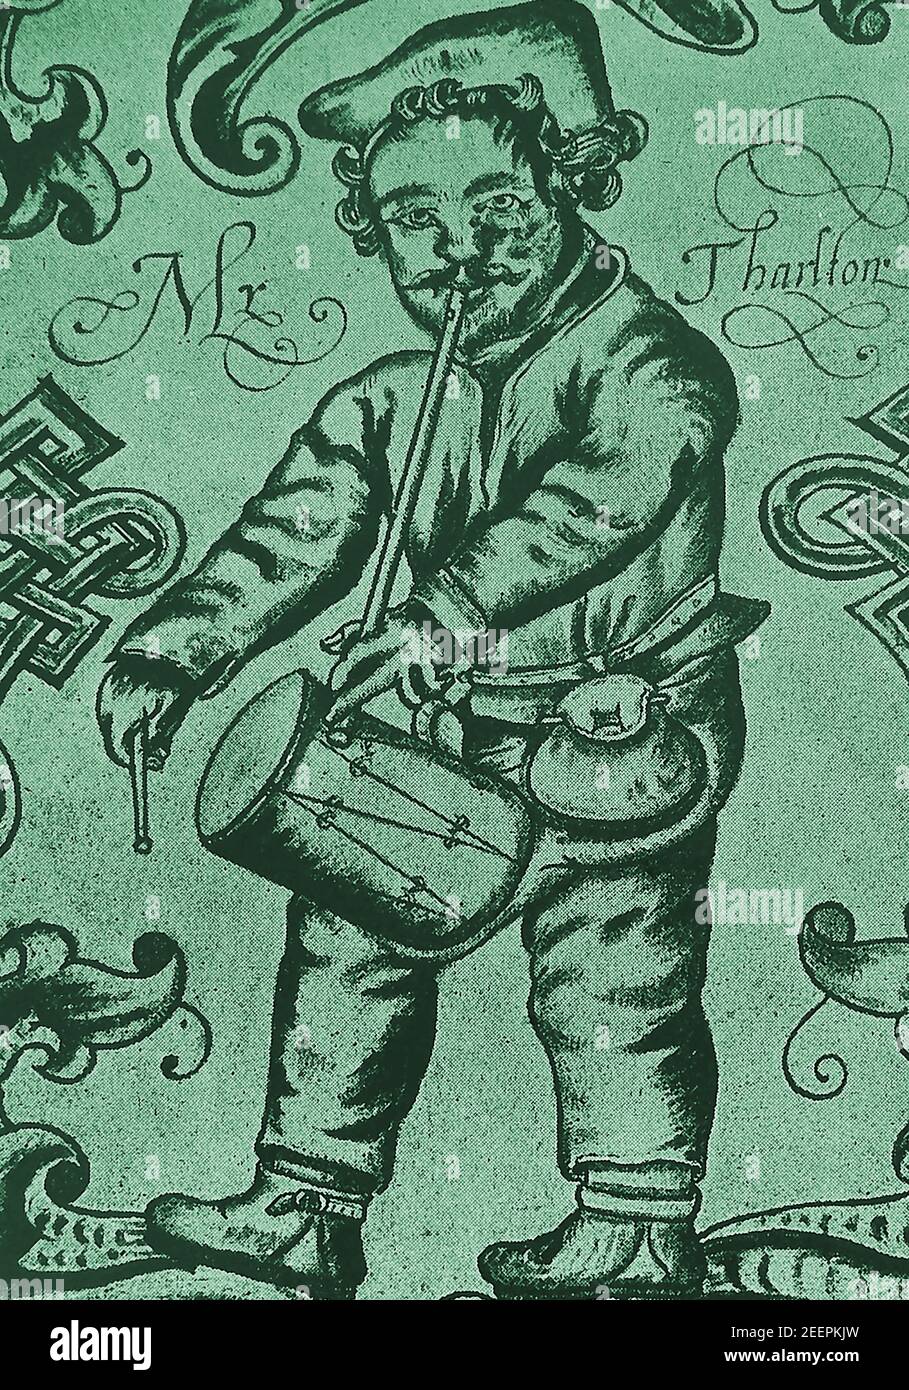 Un vecchio ritratto illustrativo di Richard Tarlton (tarelton o Tharlton) circa 1540-1588, che era uno dei più famosi comici musicali, playwrights, cantanti, ballerini e scrittori del suo tempo (periodo elisabettiano). È visto qui con il suo tubo, tabour e tamburo. Nel 1583, viene menzionato come uno dei membri originali della Regina uomini (la Regina Elisabetta ha mantenuto gli intrattenitori), spesso giocando al Teatro della Cortina. Era conosciuto per improvvisare il doggerello su argomenti suggeriti dal suo pubblico, tanto che il doggerello improvvisato o le rime divennero noti come Tarltons. Foto Stock